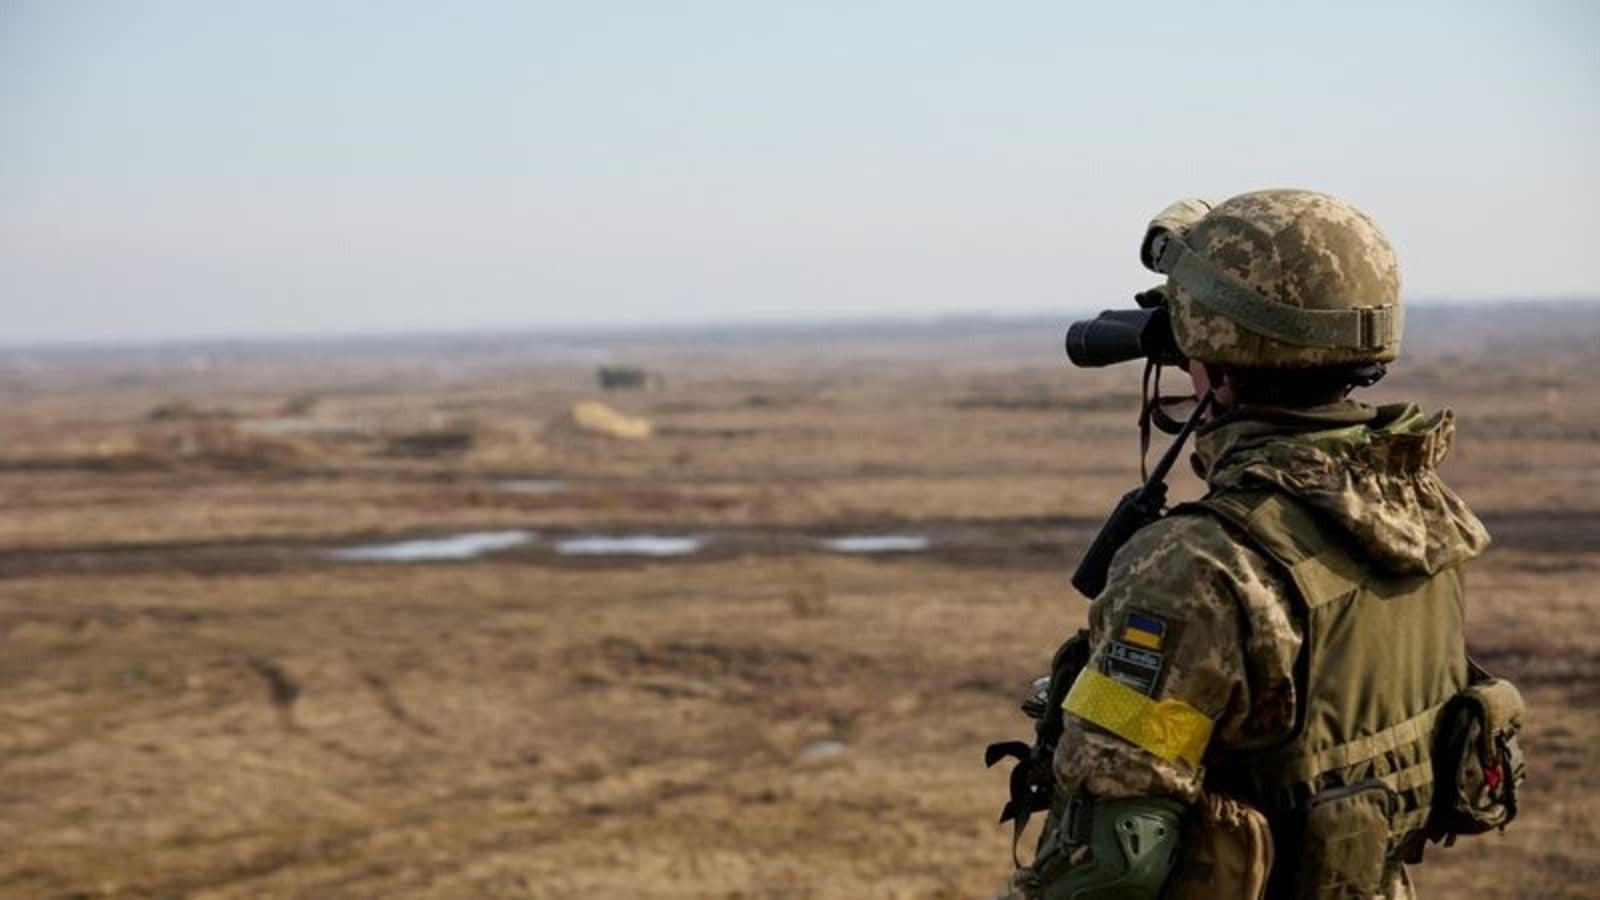 چرا اعراب در بحث اوکراین به آمریکا اعتمادی ندارند؟ / پای ایران در میان است